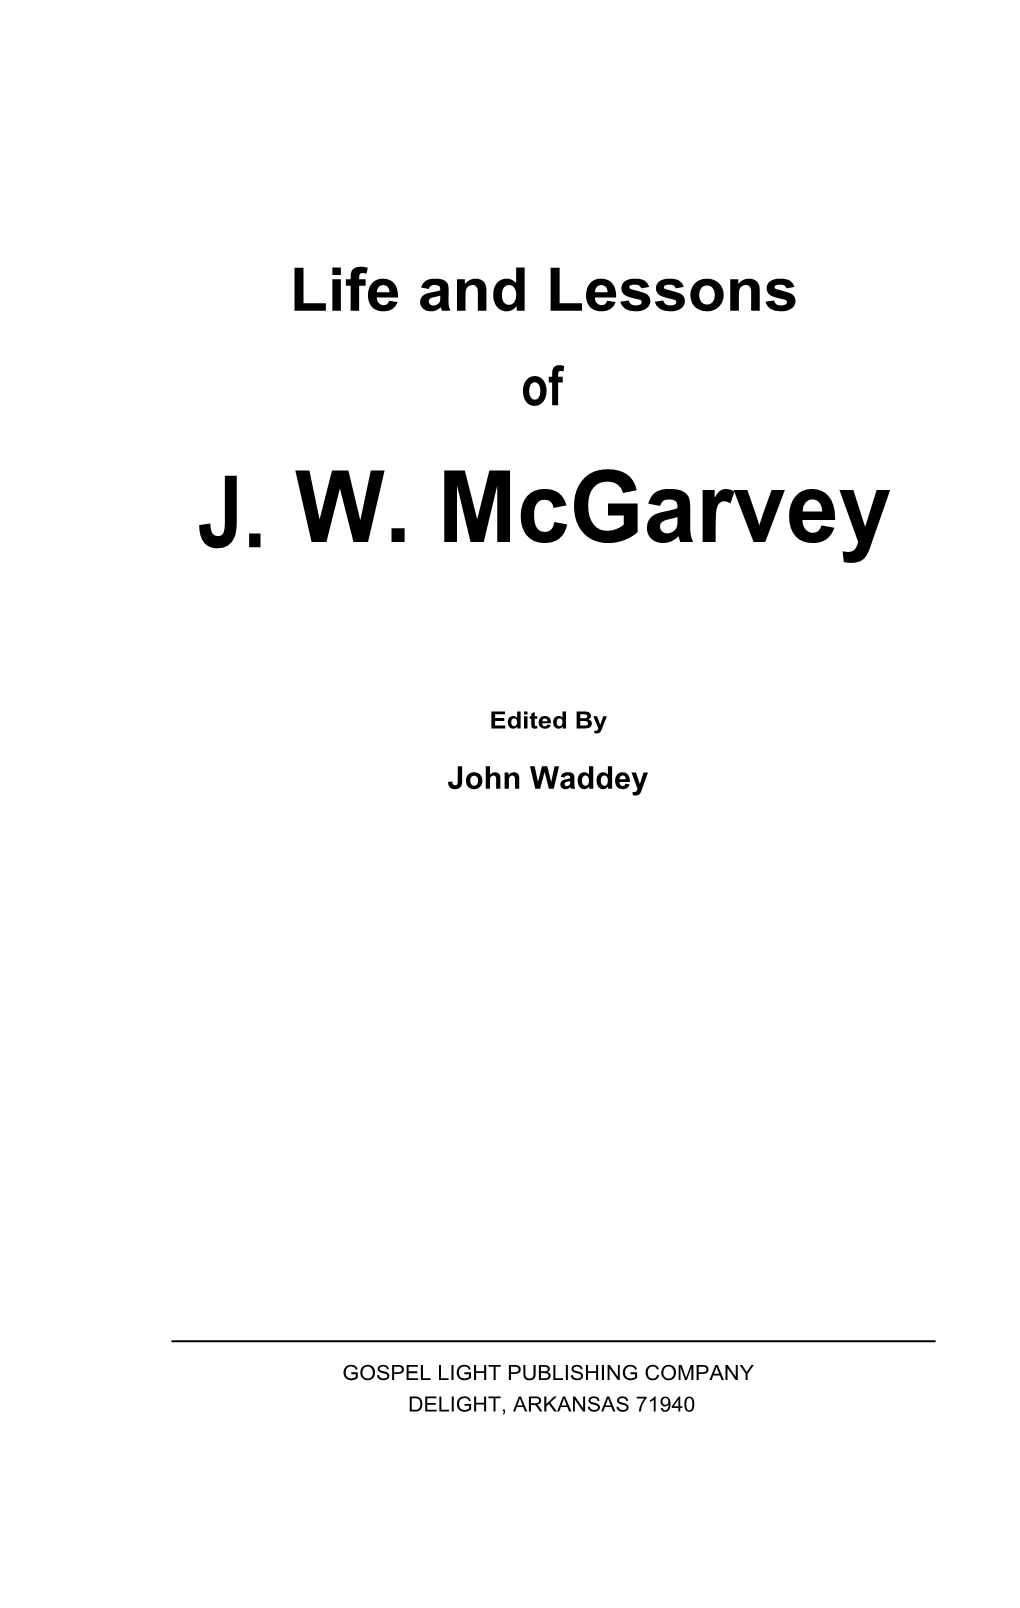 J. W. Mcgarvey